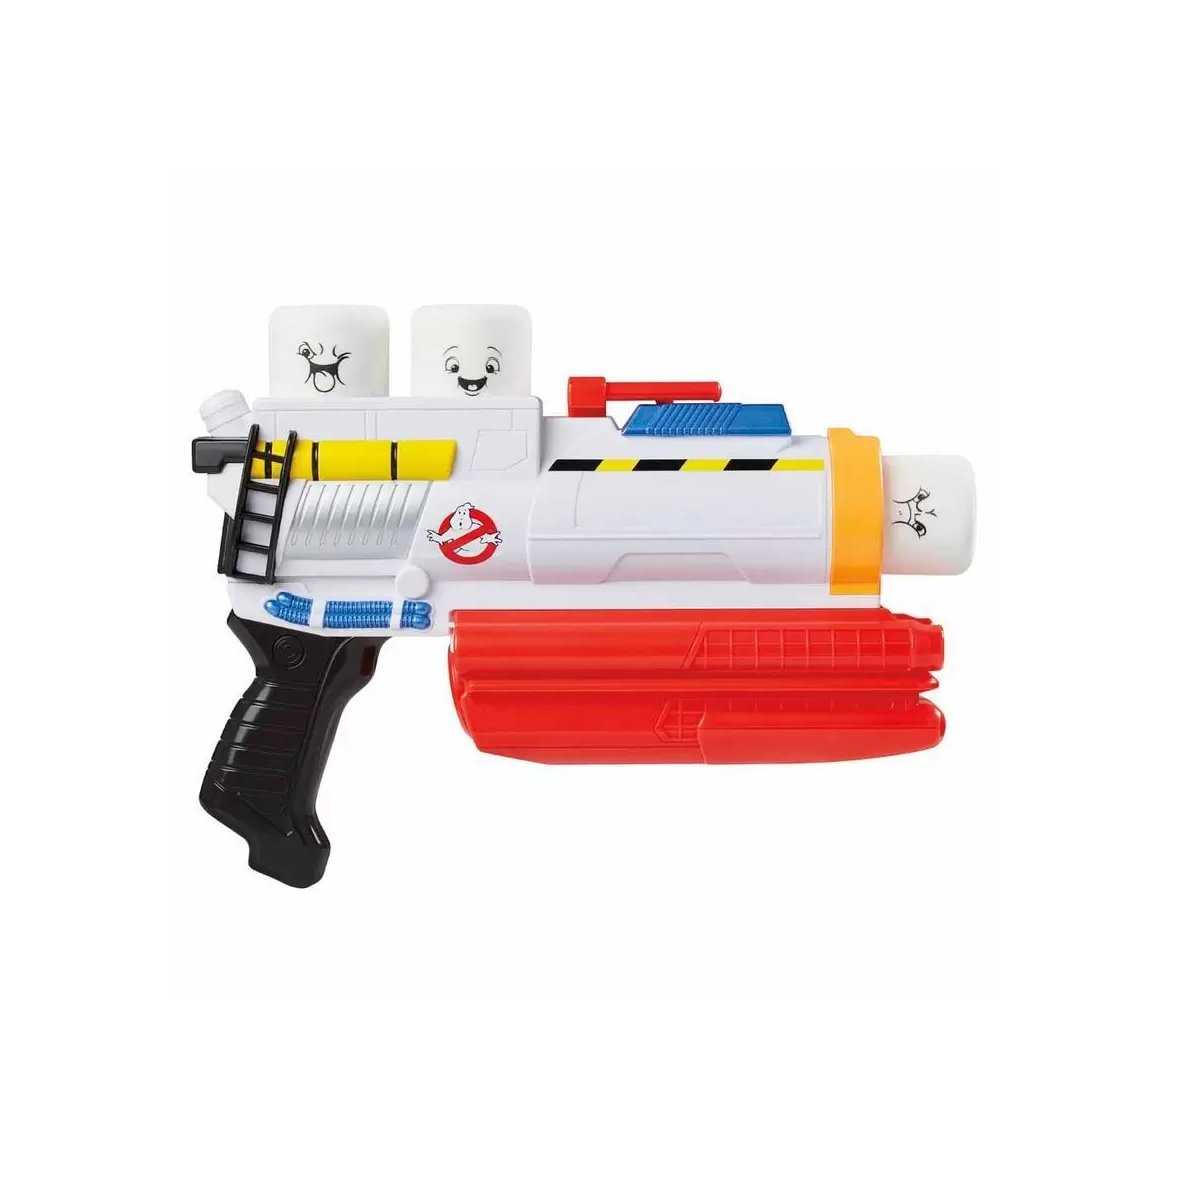 Brinquedo Lancador de Marshmallows Ghostbusters E9610 Hasbro - 3